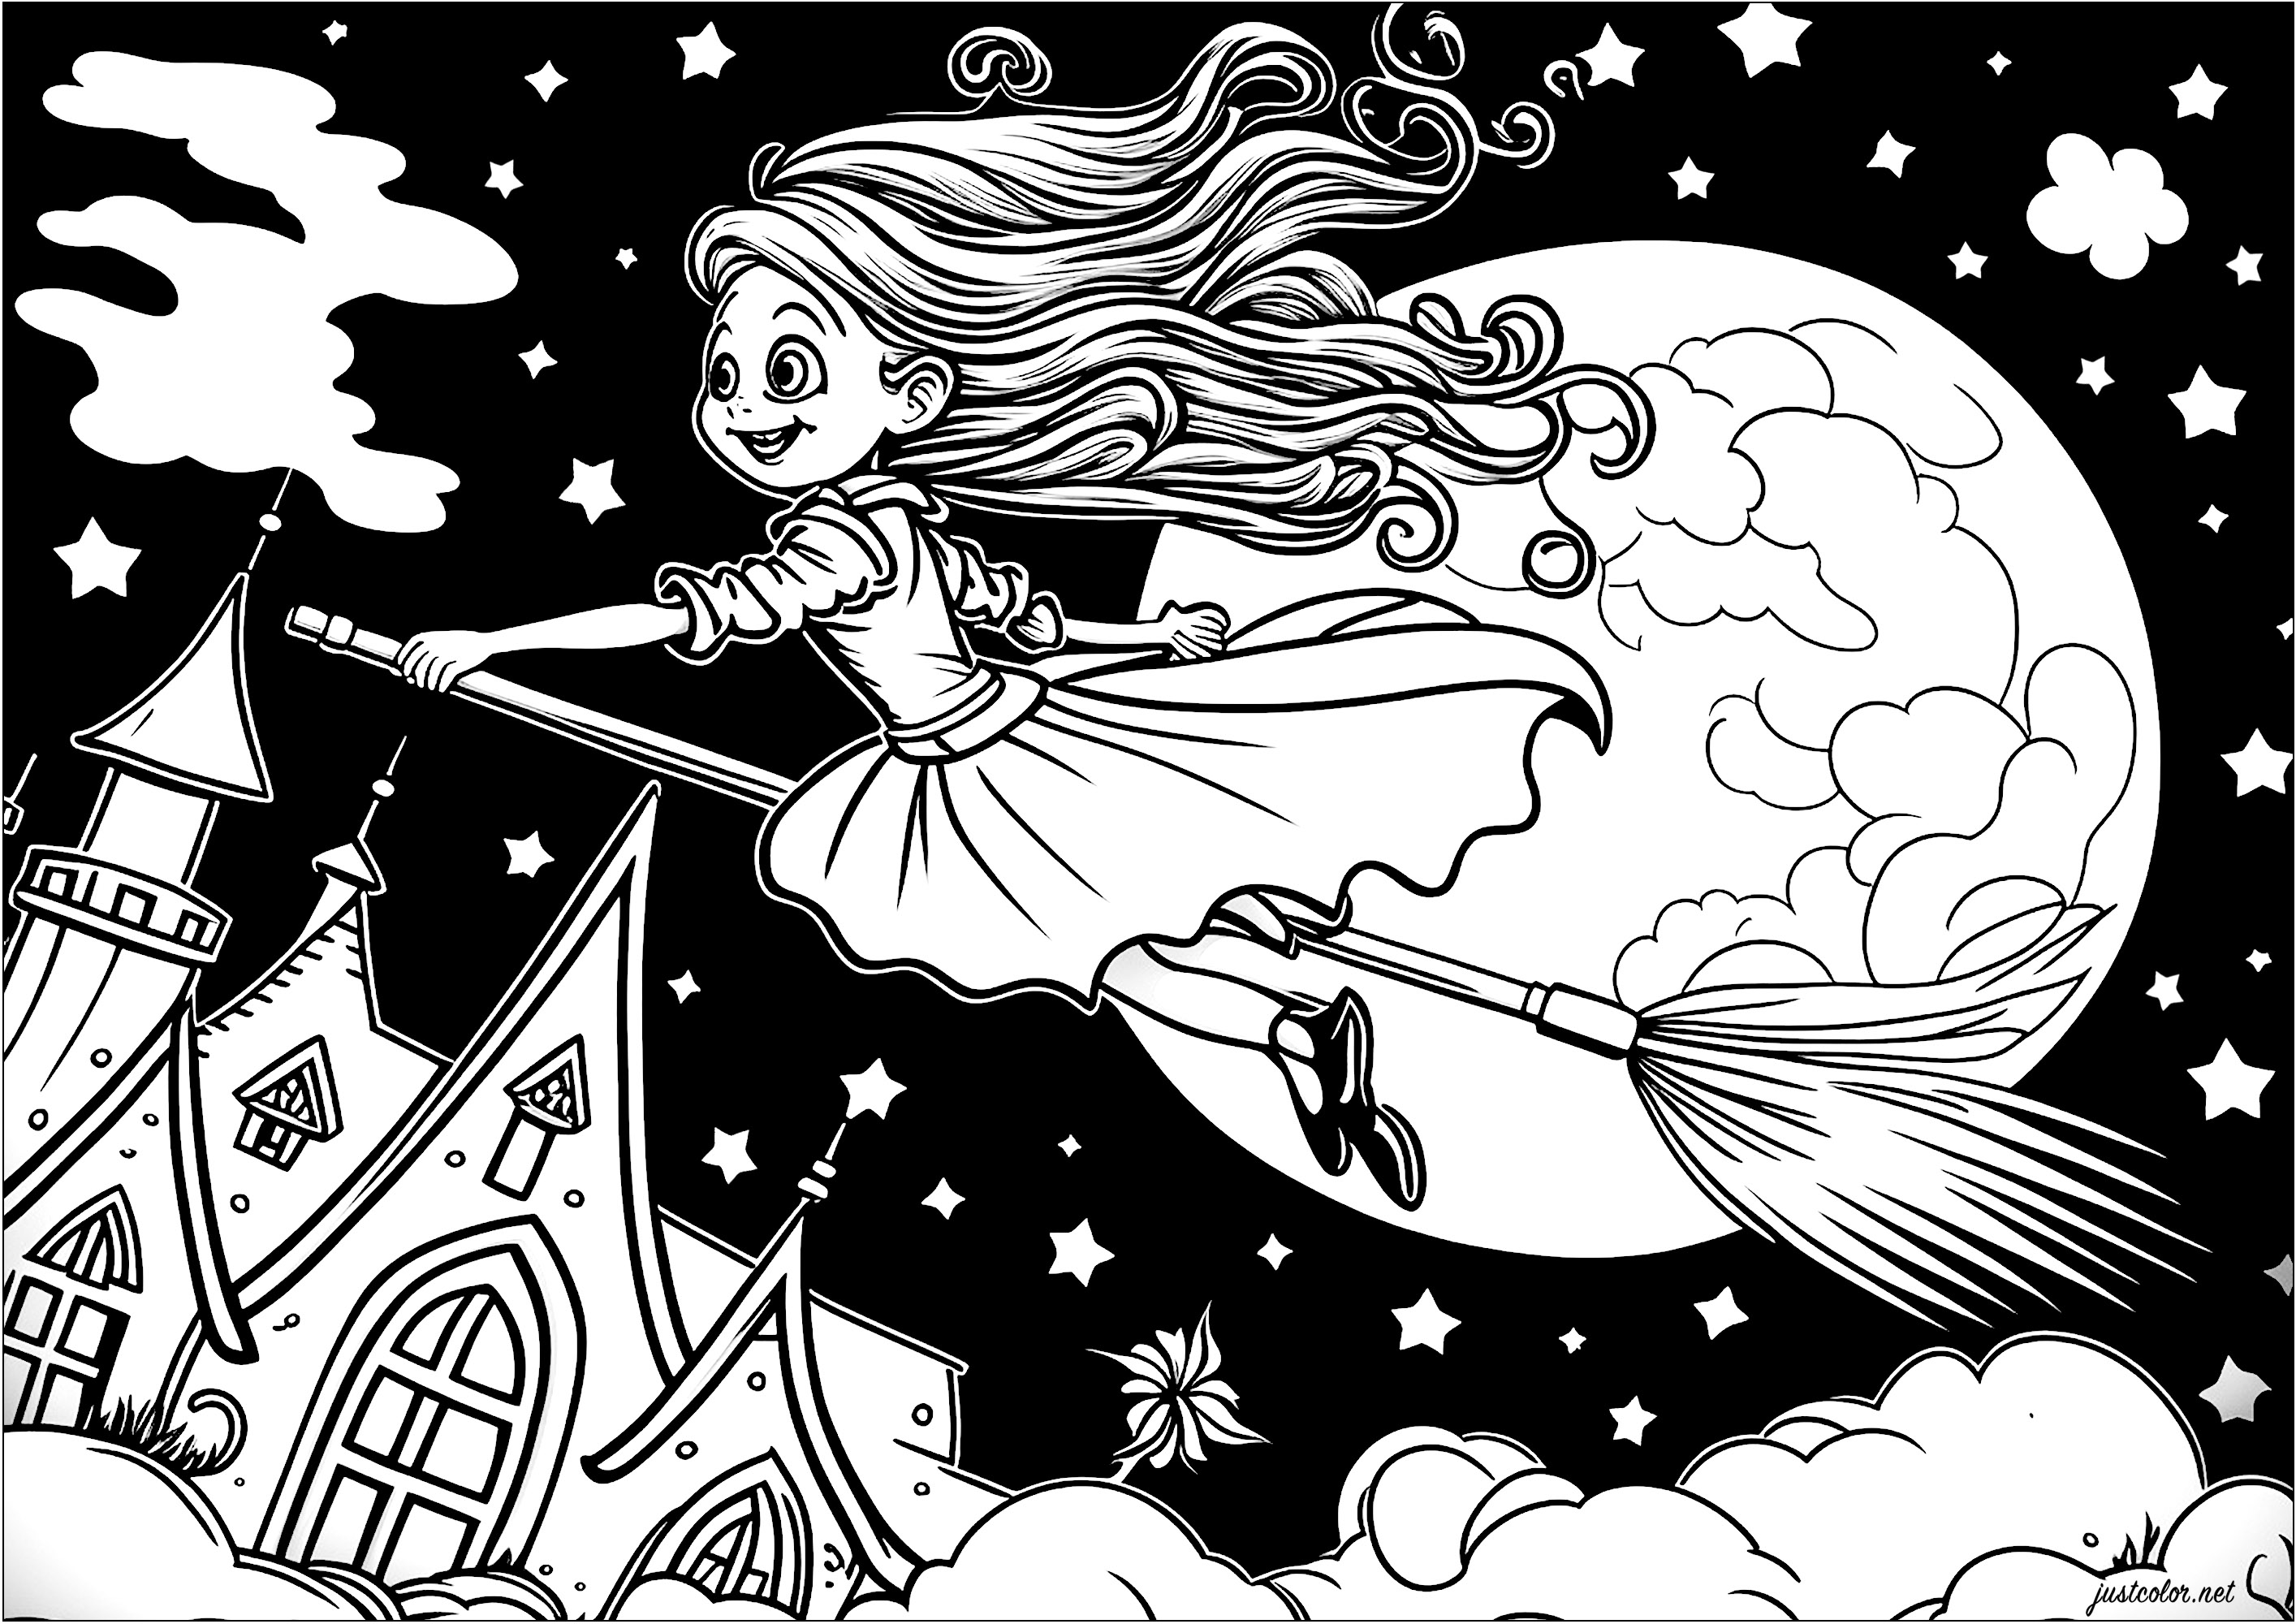 Bemalung einer jungen Hexe, die auf ihrem Besen fliegt. Hier ist eine hübsche Hexe auf ihrem Besen dargestellt, die in der Luft fliegt, über den Wolken. Sie trägt ein langes, elegantes Kleid, und ihr Haar weht im Wind. Der Mond ist voll und sieht hinter ihr riesig aus.